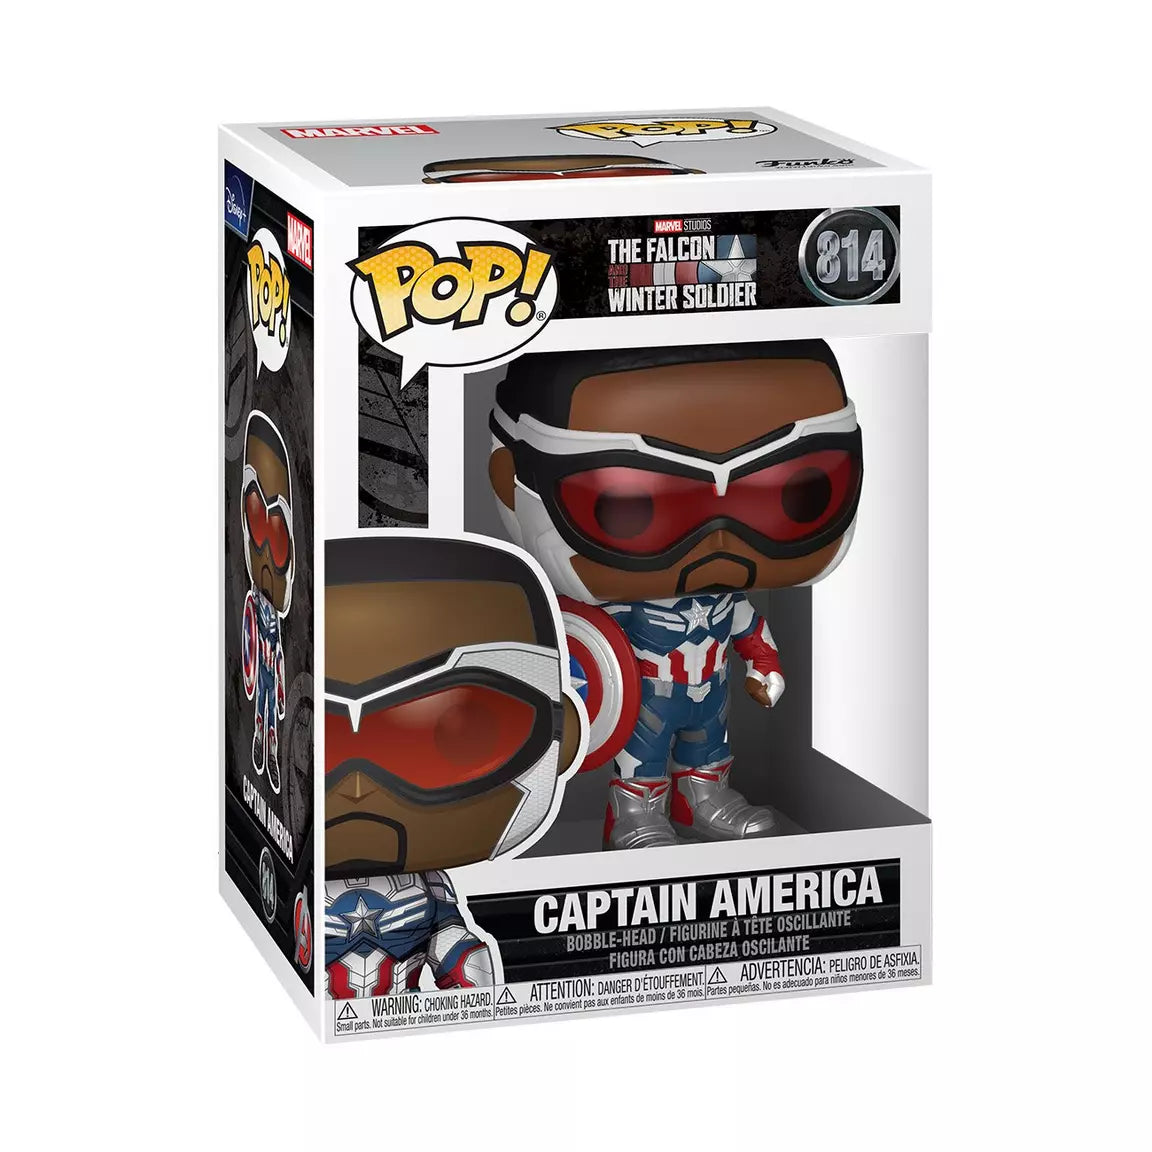 Funko Pop The Falcon and Winter Soldier Captain America 814